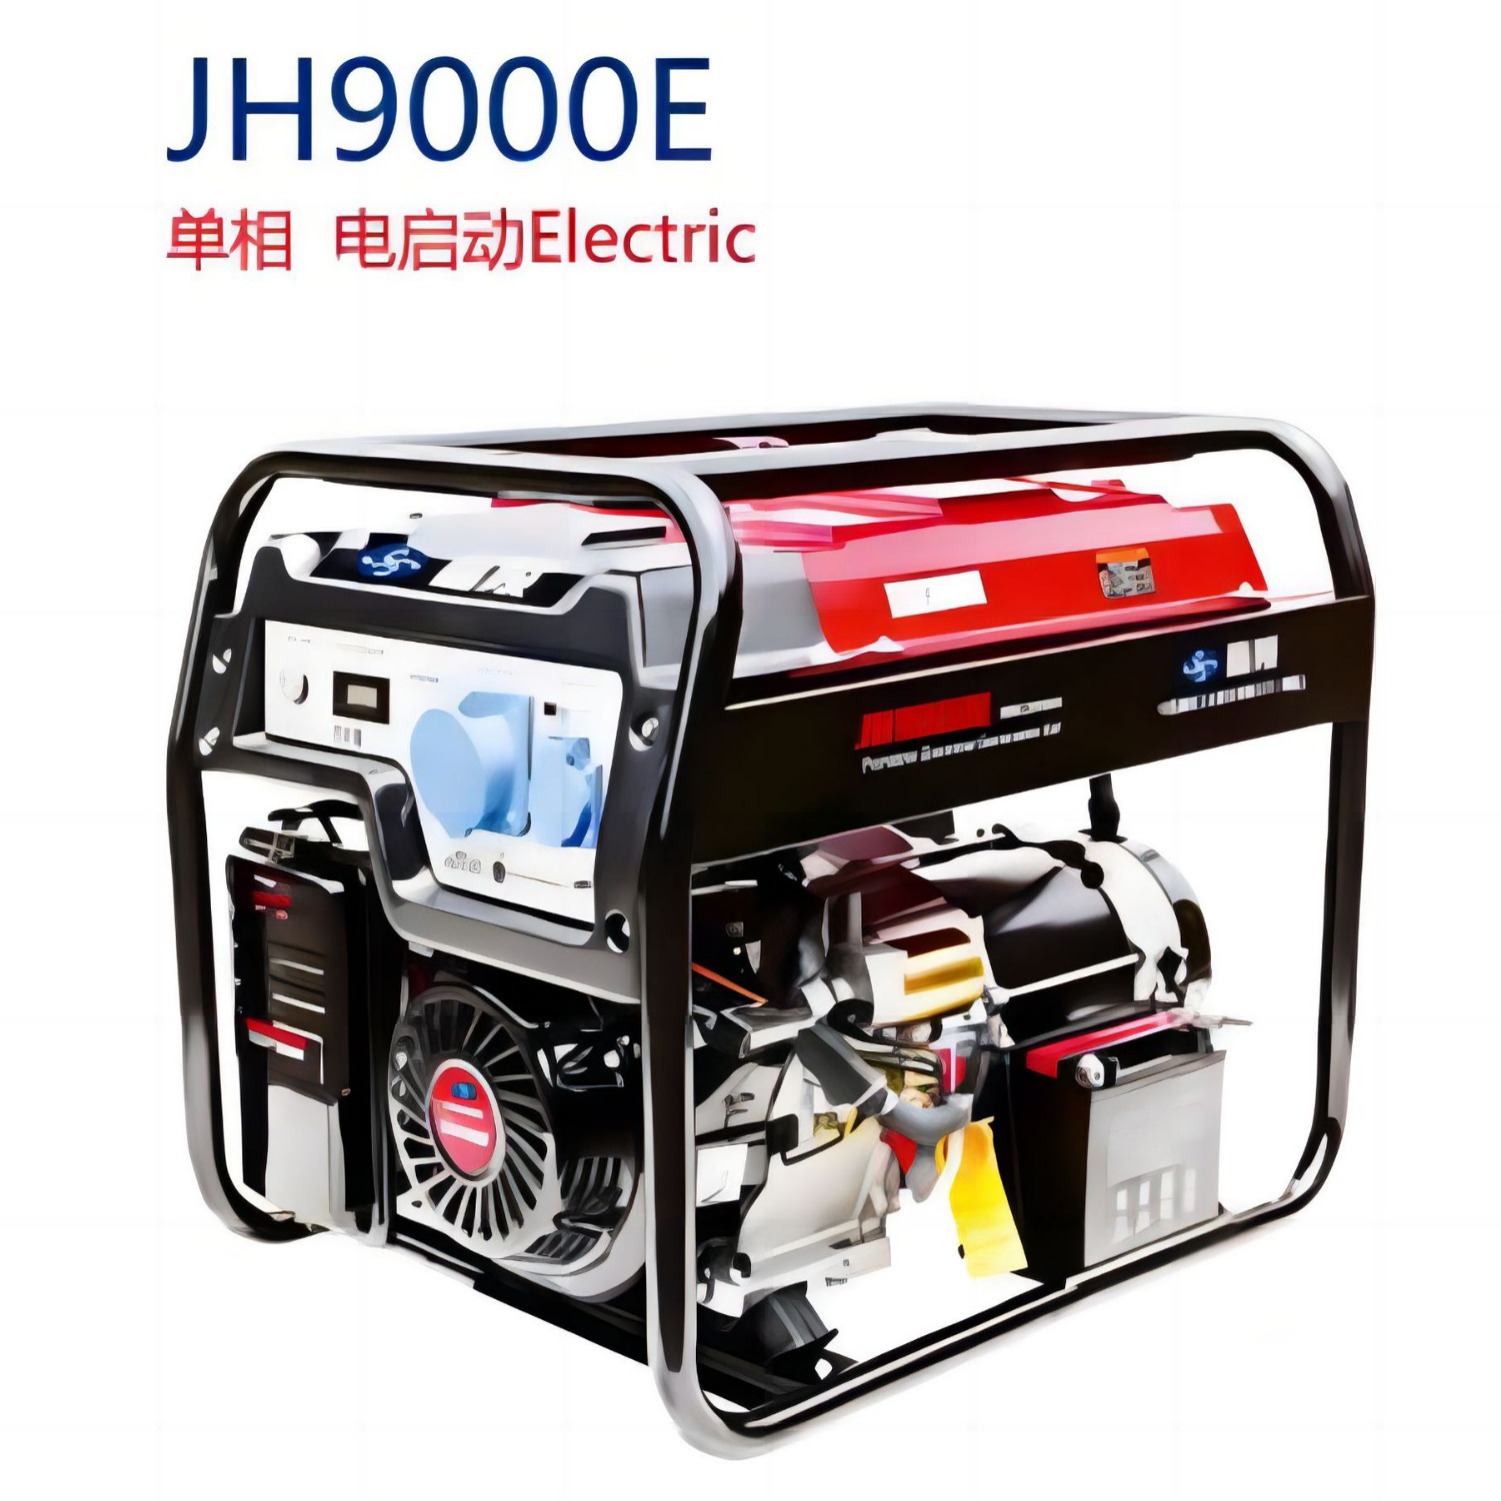 嘉陵品牌JH9000E单相230V开架式便携7.0KW汽油发电机组